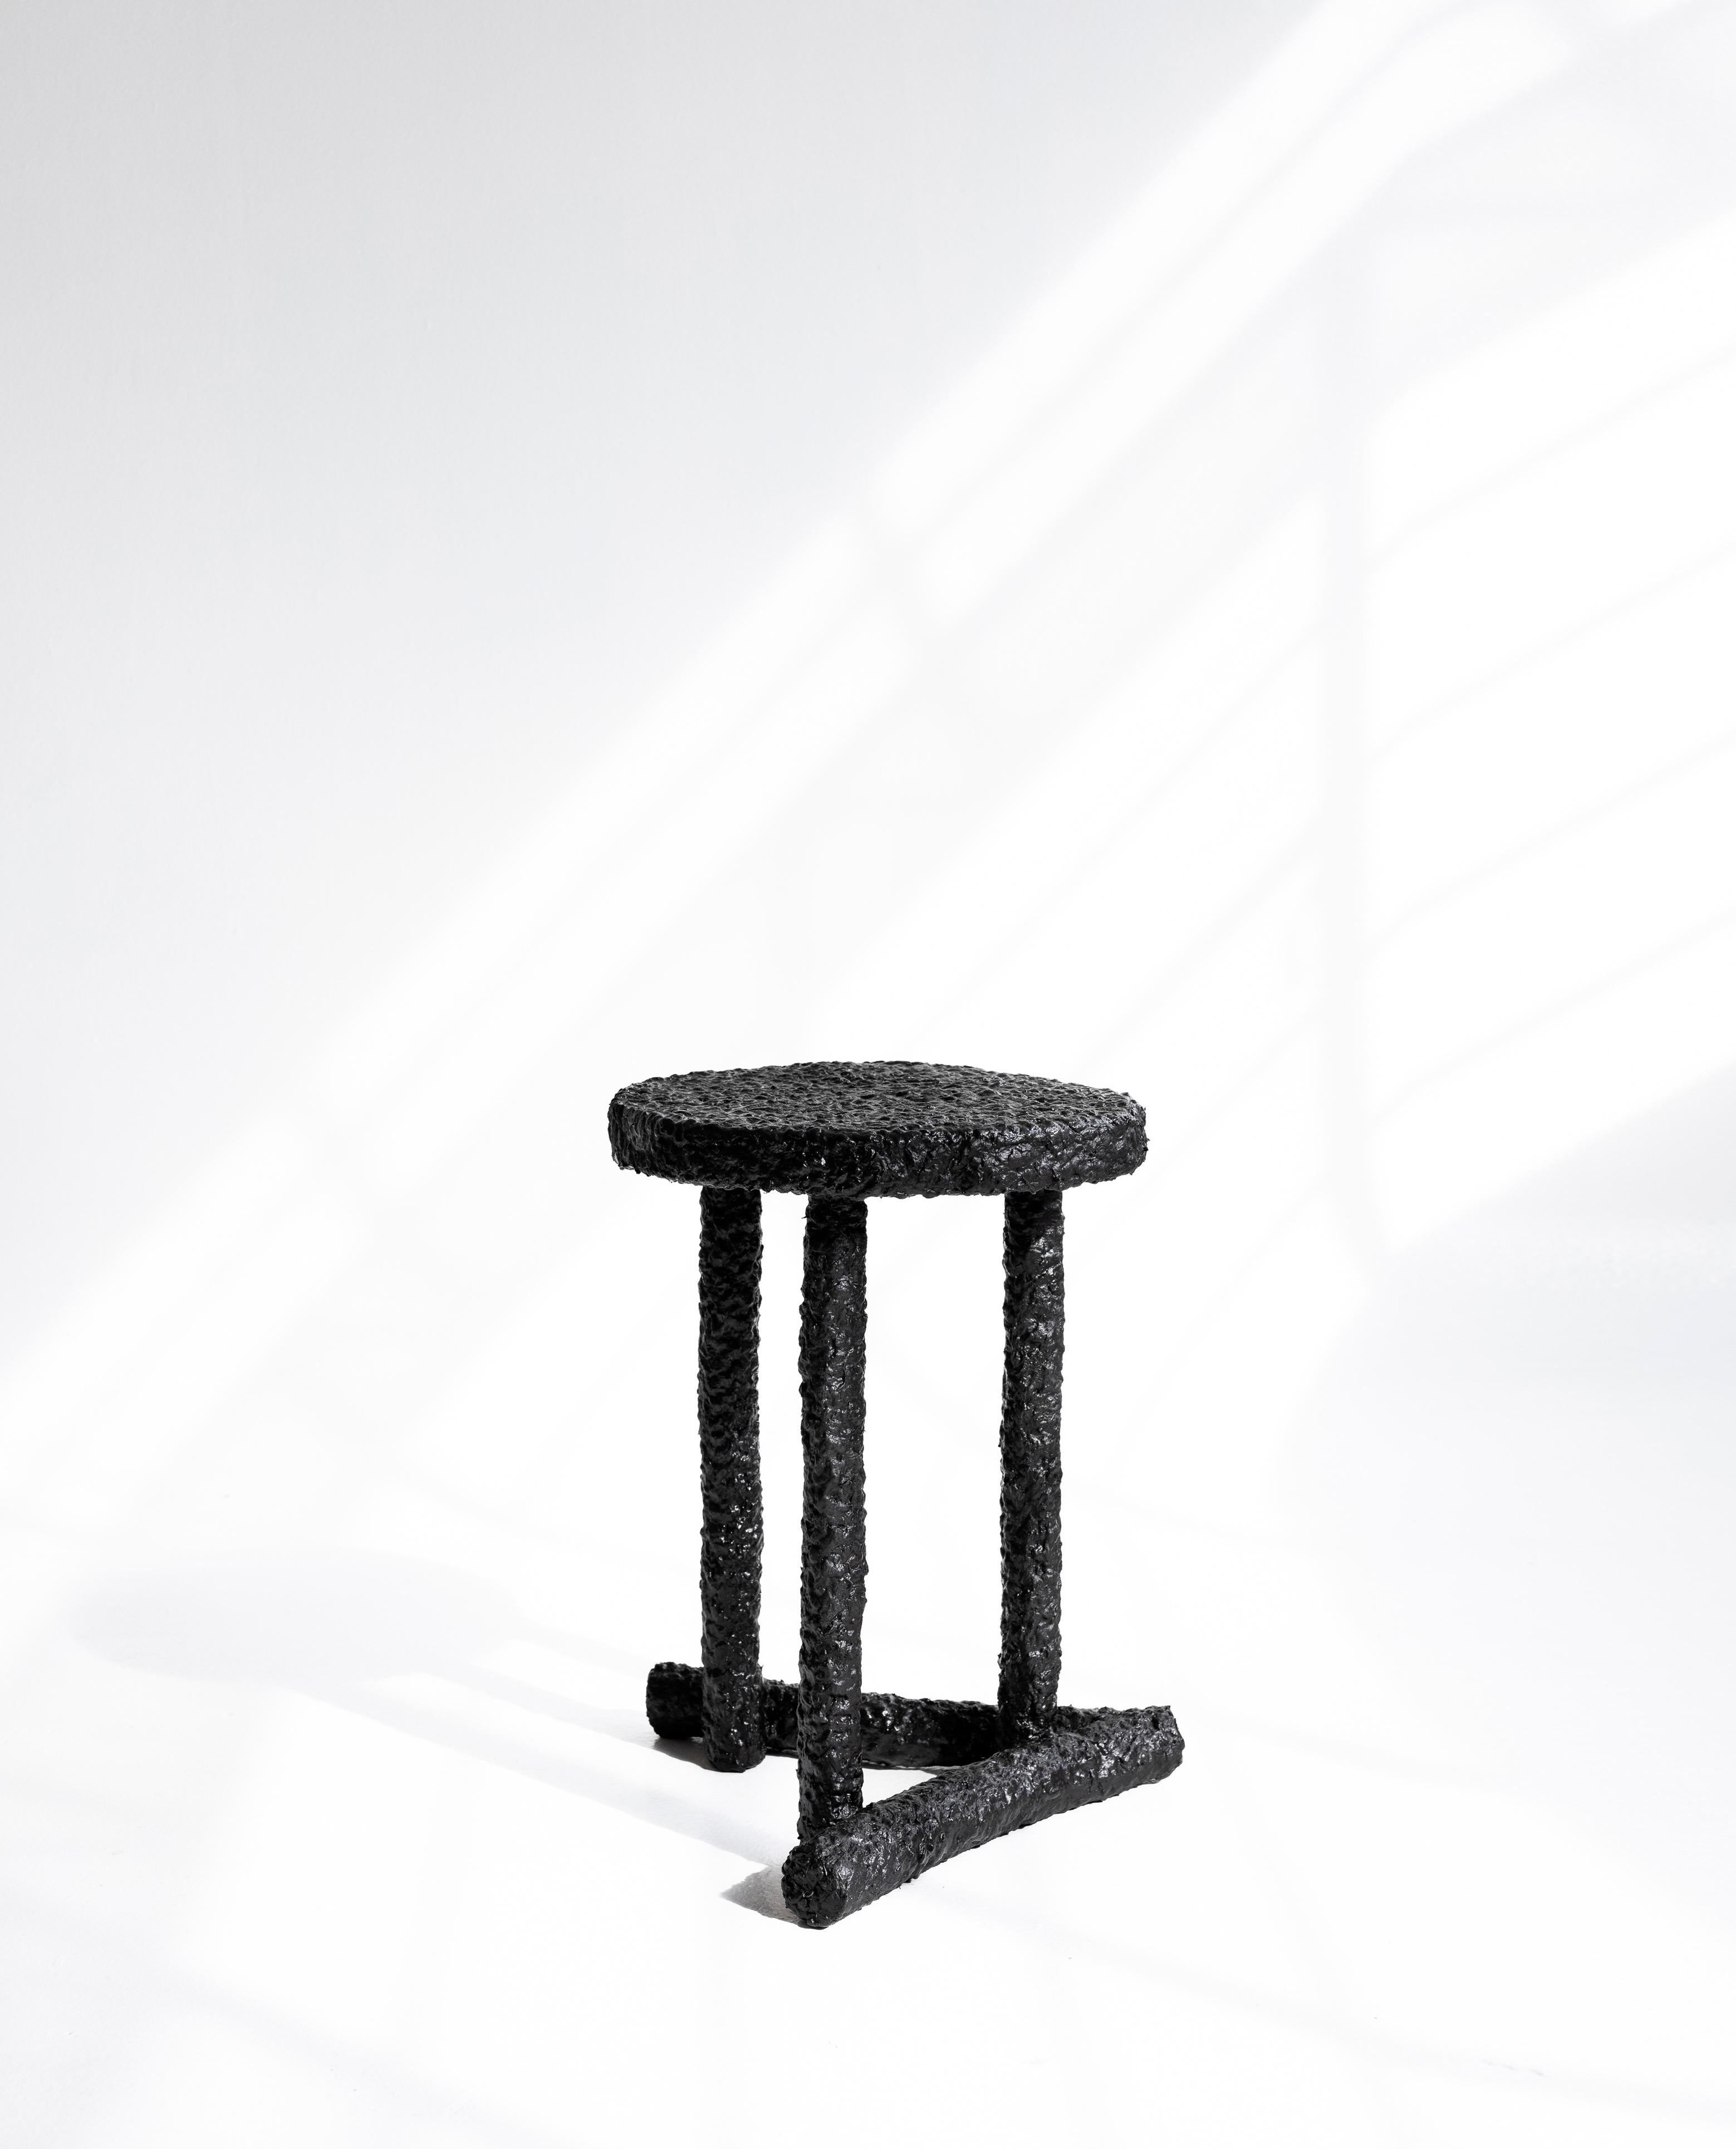 #1 CALOR SIDE TABLE
Coffee tree sticks structure, fique fiber, charcoal
41x35x43 cms
Unique piece